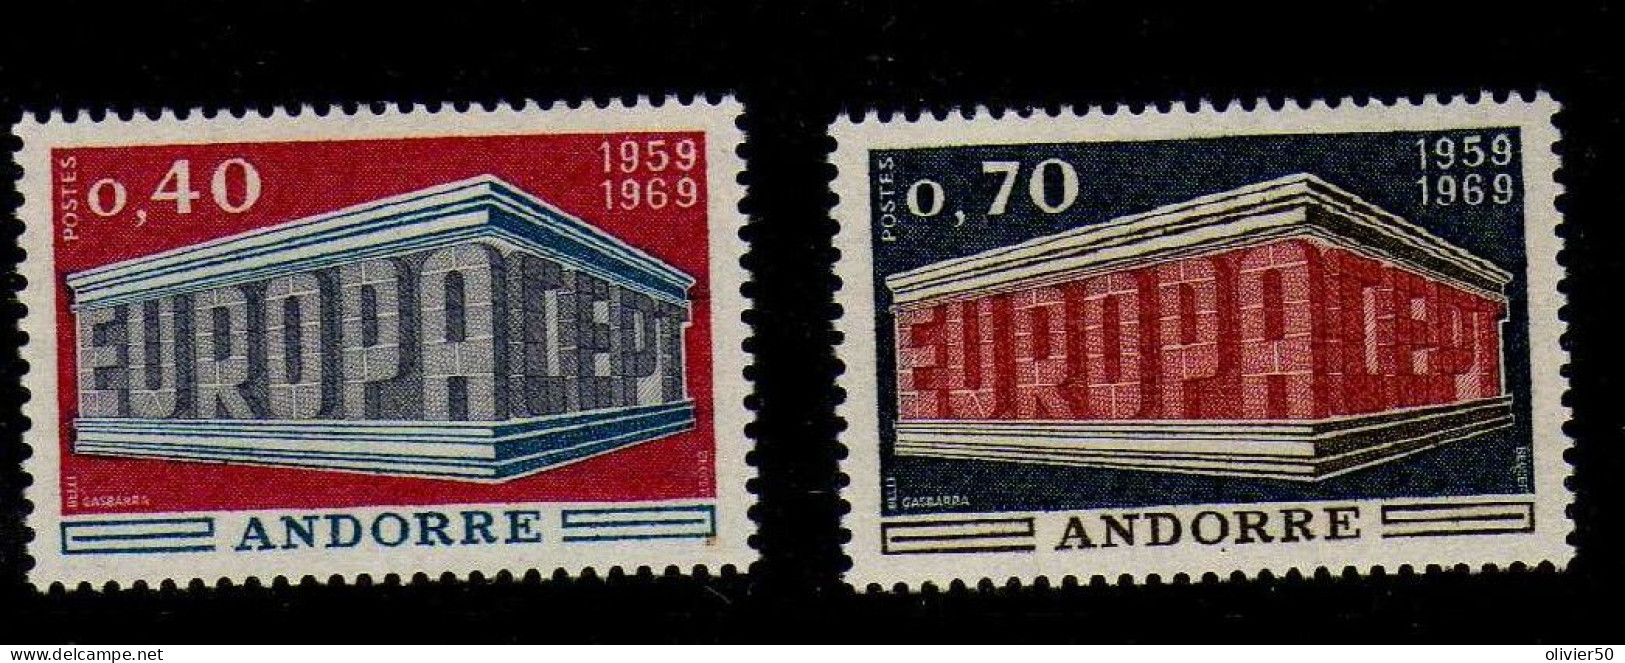 Andorre Francaise -  1969 - Europa  -Neufs** - MNH  - - Nuevos